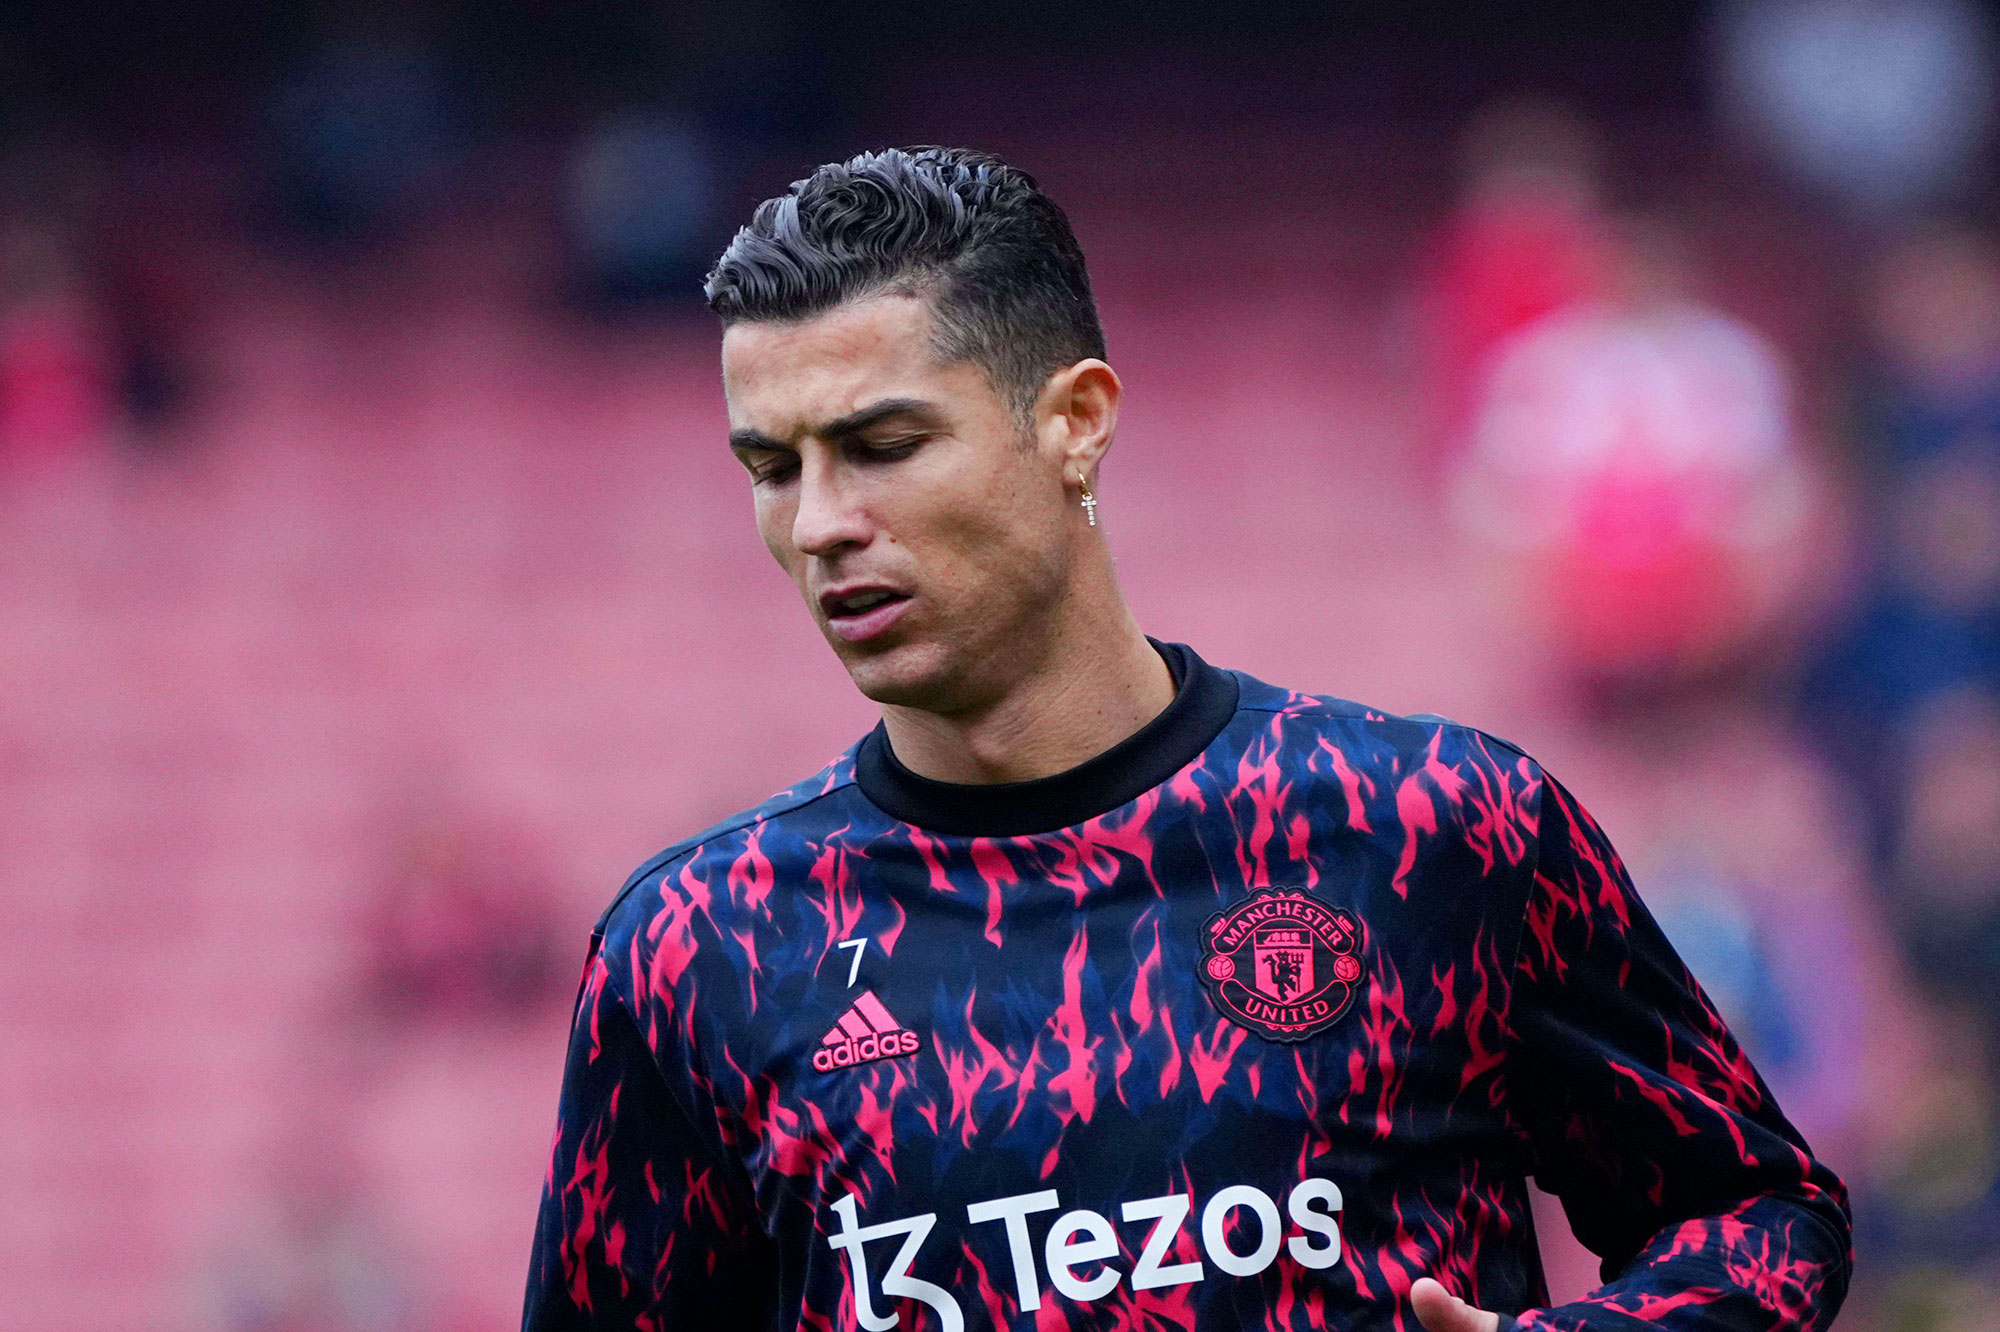 Man Utd confirme que Ronaldo manquera la tournée de pré-saison